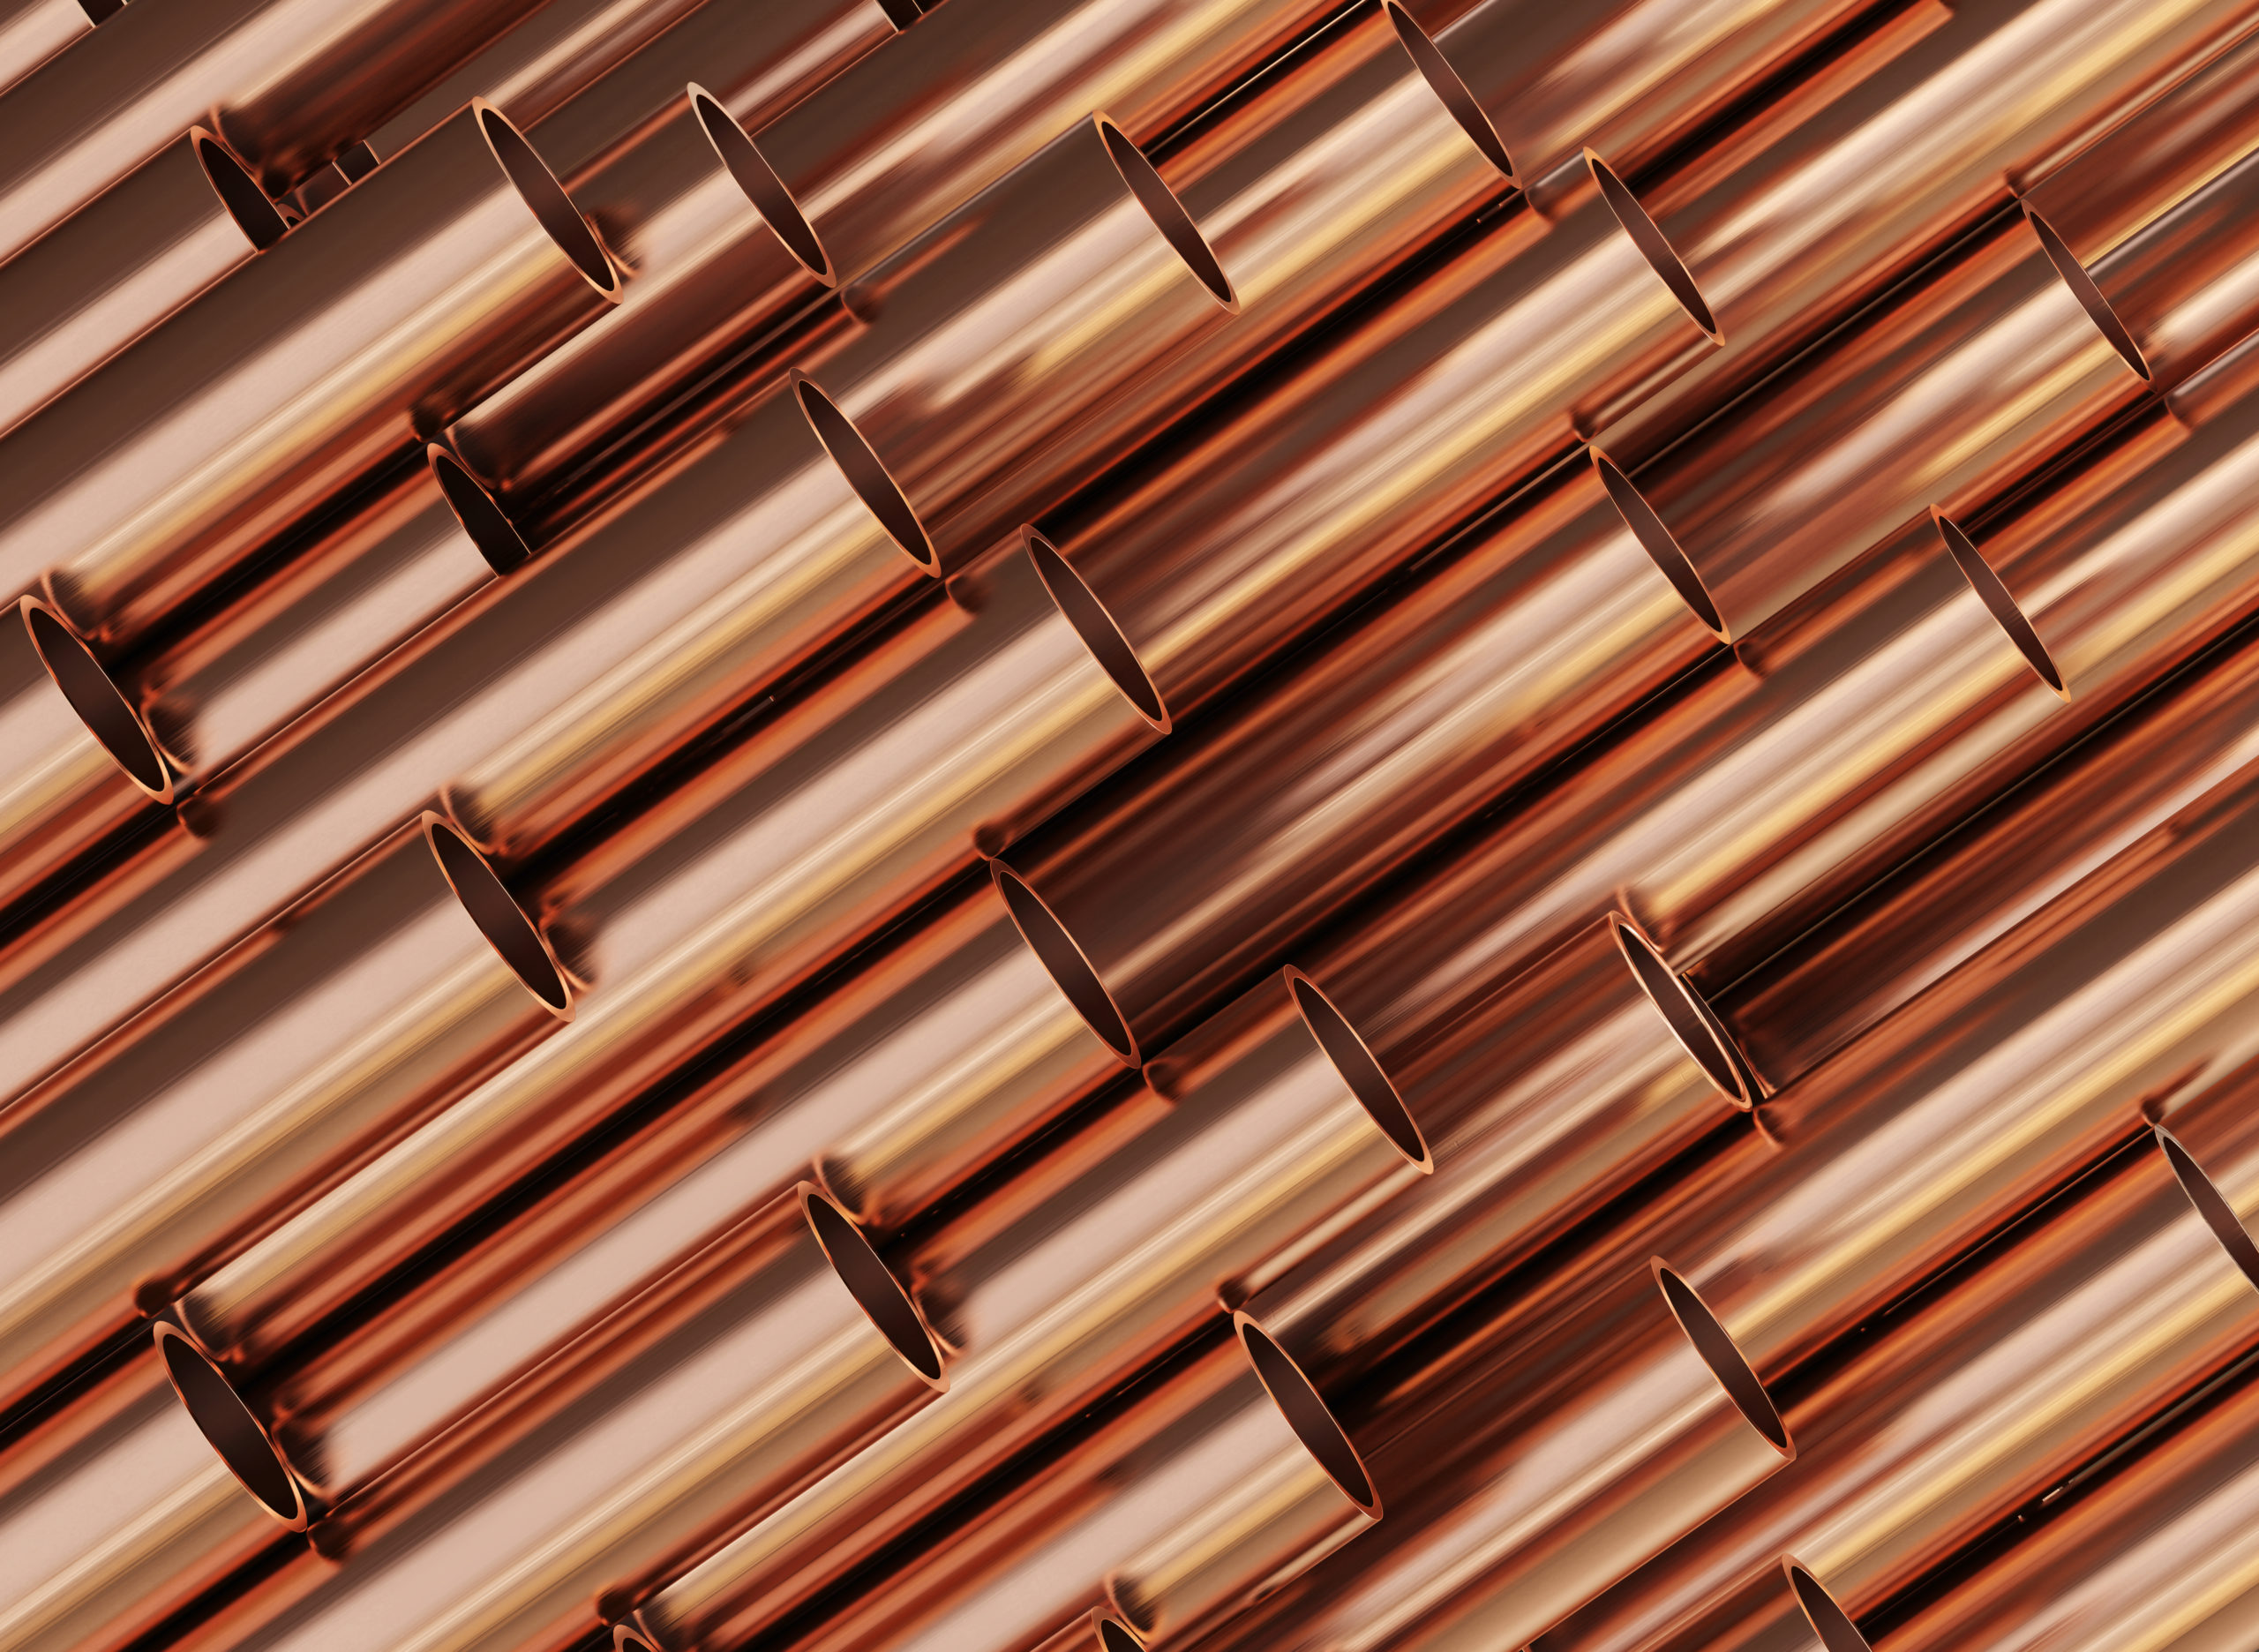 copper nickel alloys